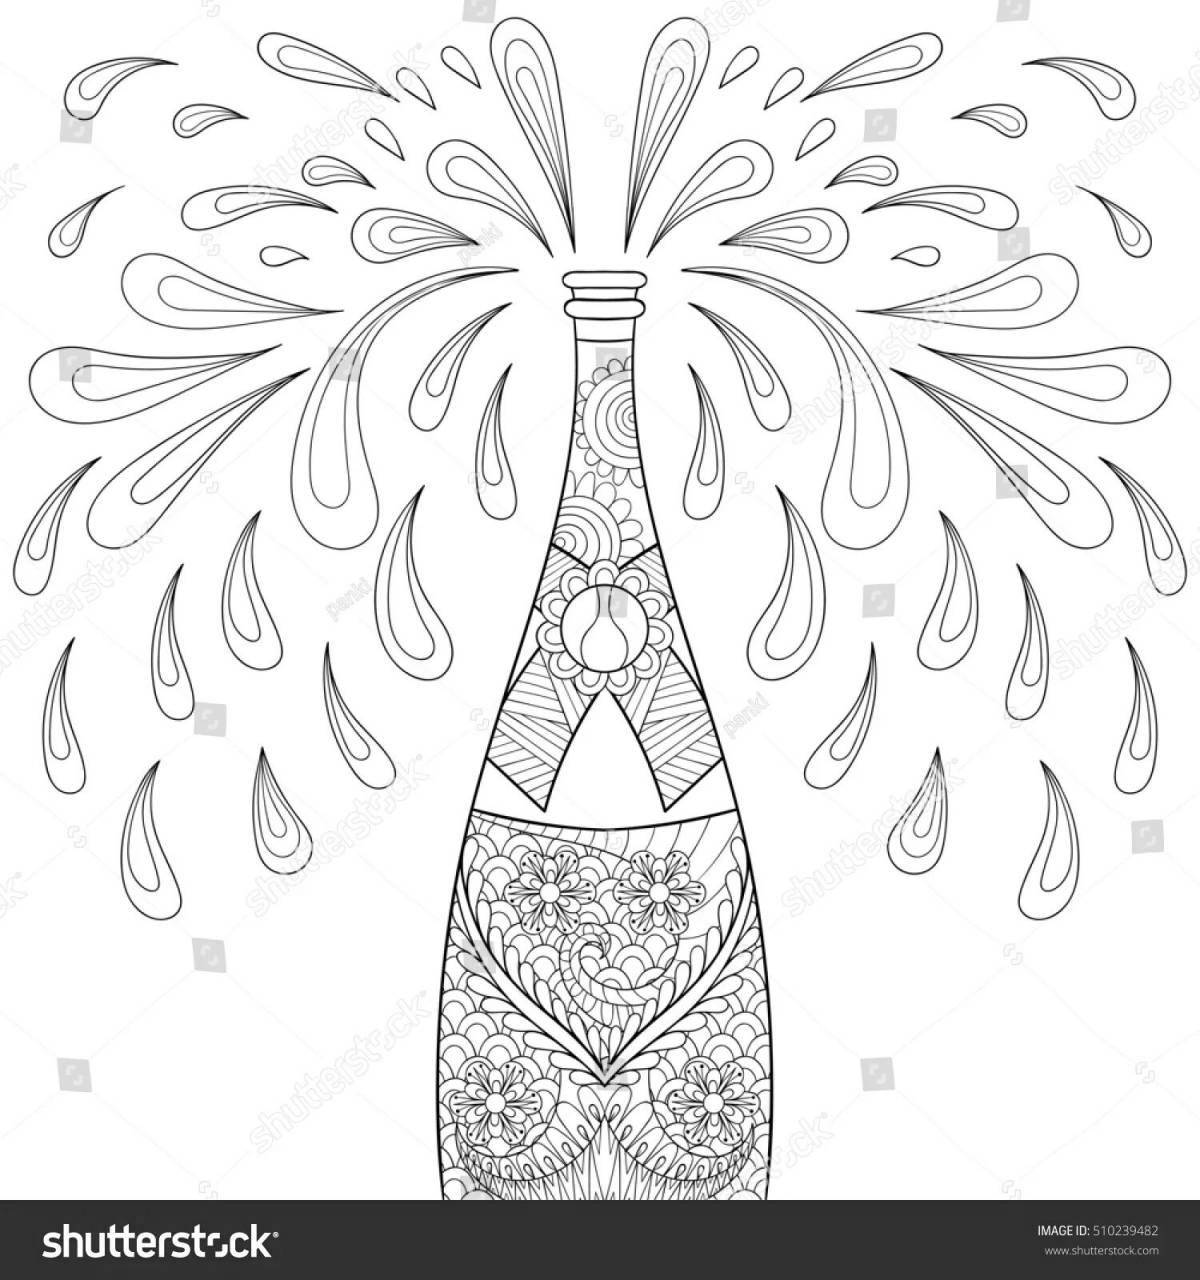 Радостная раскраска бутылка шампанского